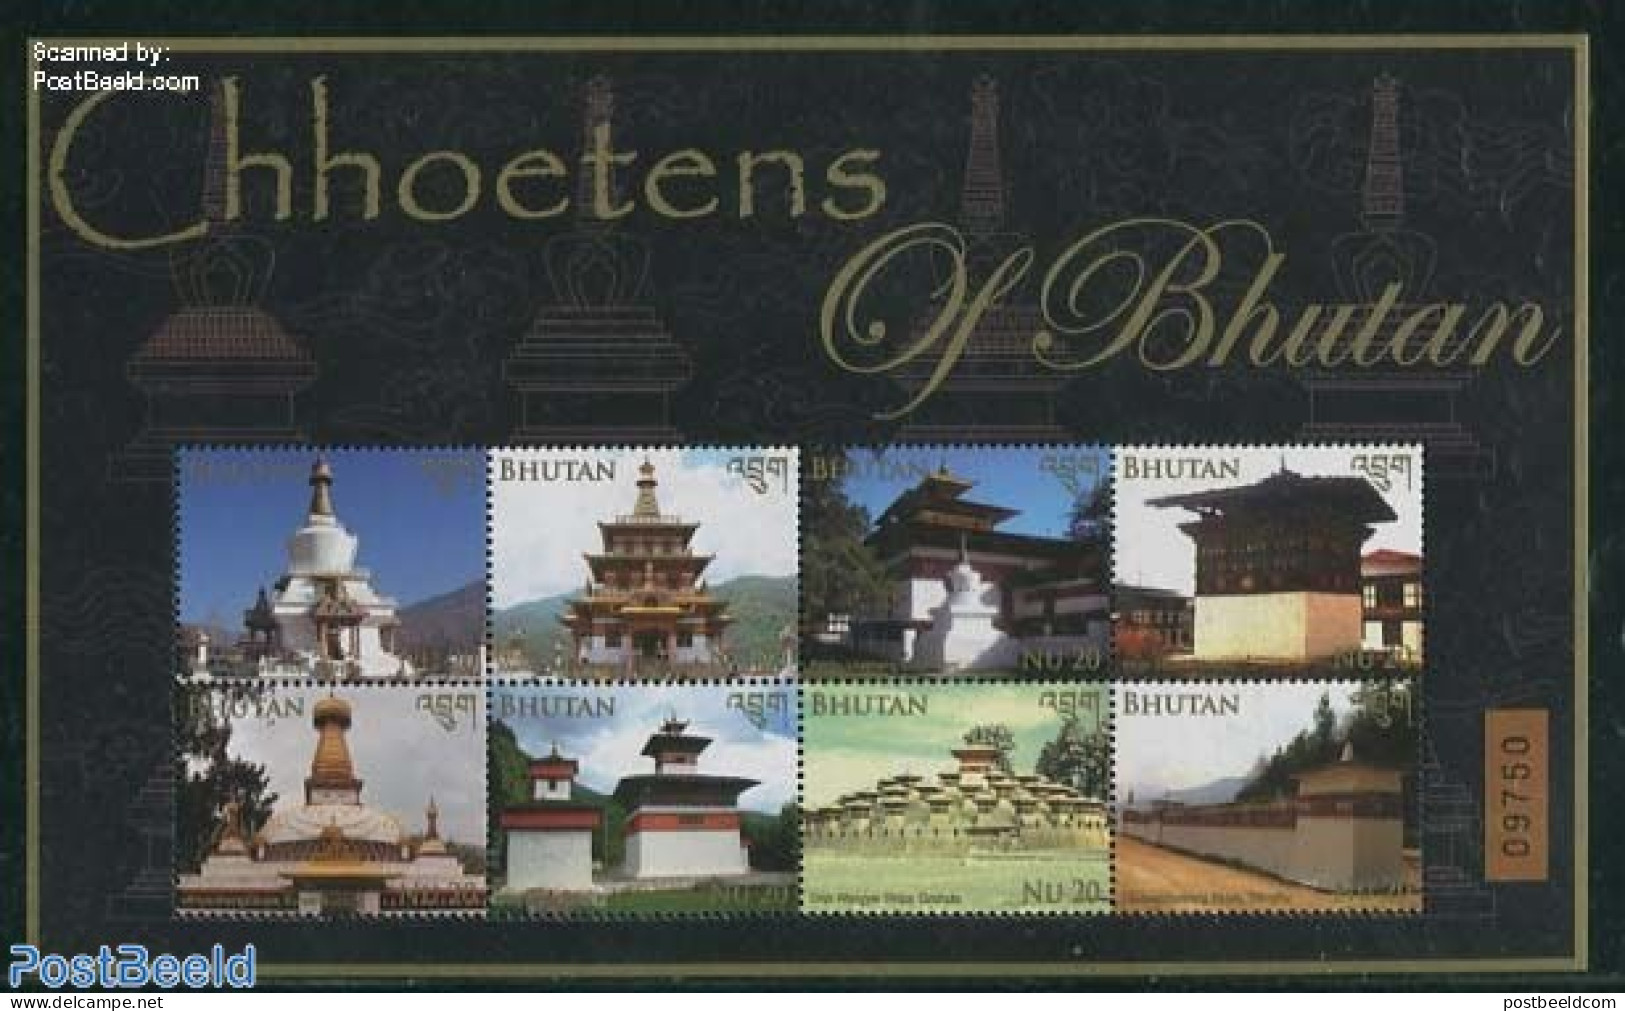 Bhutan 2014 Chhoetens Of Bhutan 8v M/s, Mint NH, Religion - Religion - Bhutan